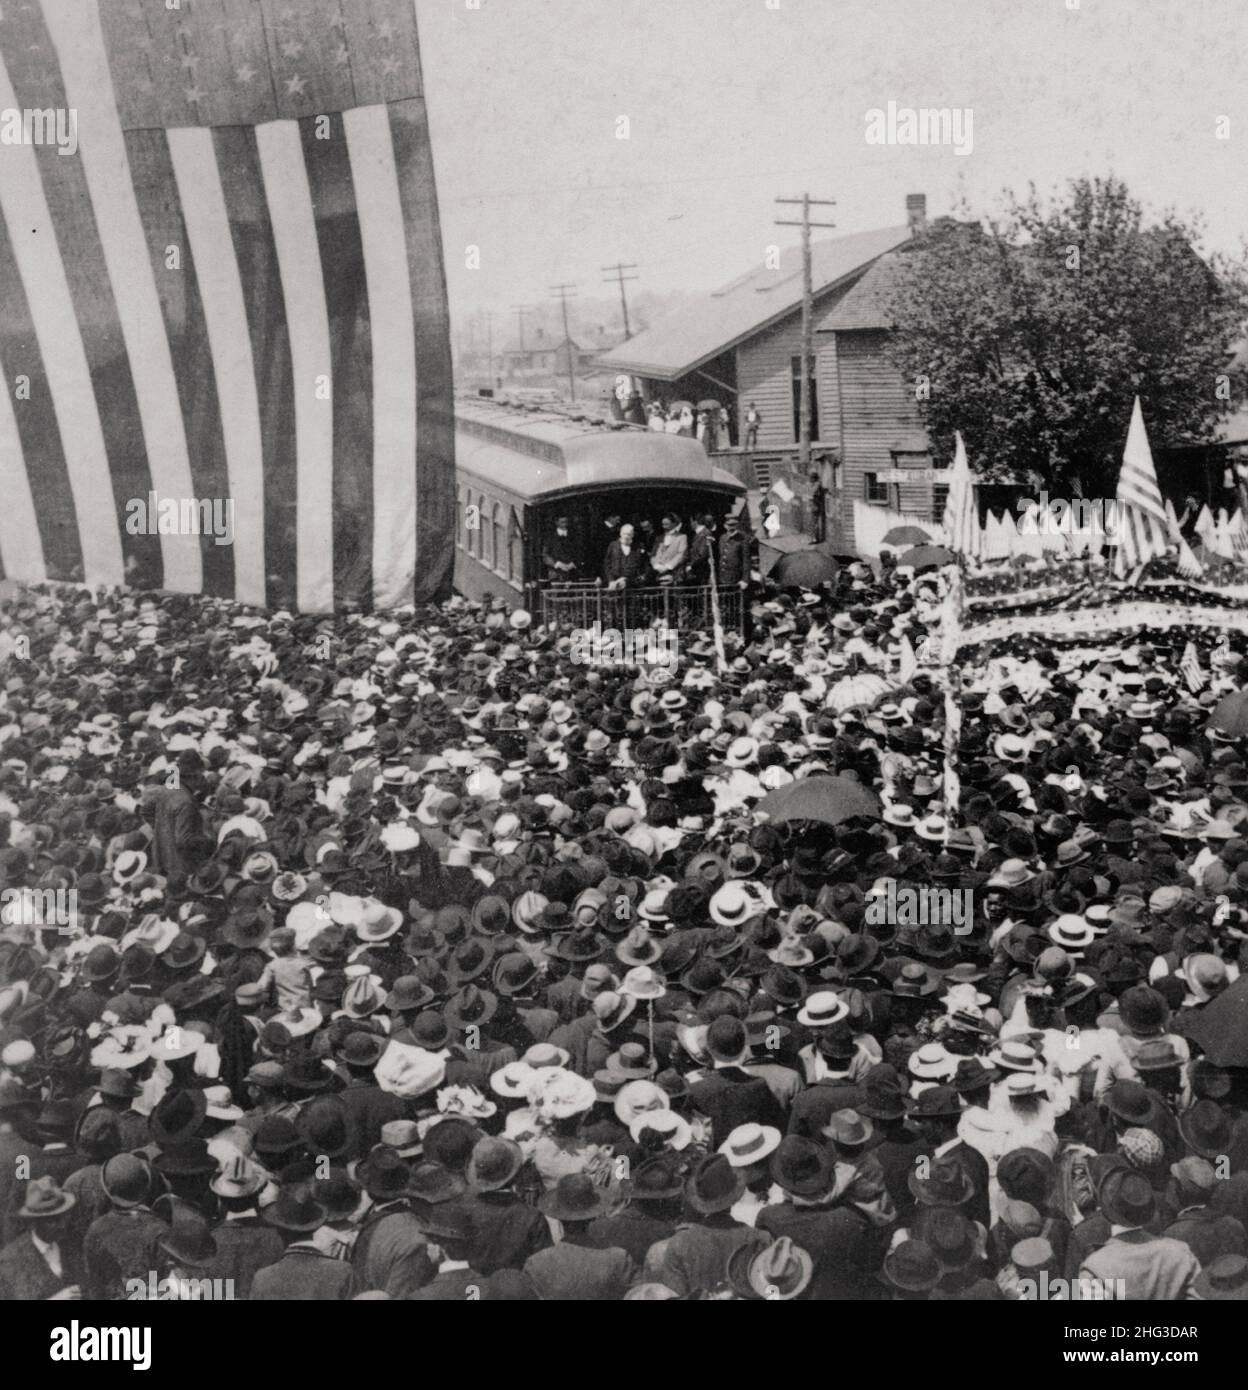 Lo splendido benvenuto del presidente McKinley nella città natale di Gen. Wheeler, Decatur, Alabama, USA. 1900s William McKinley sul retro del treno, e folla. Foto Stock